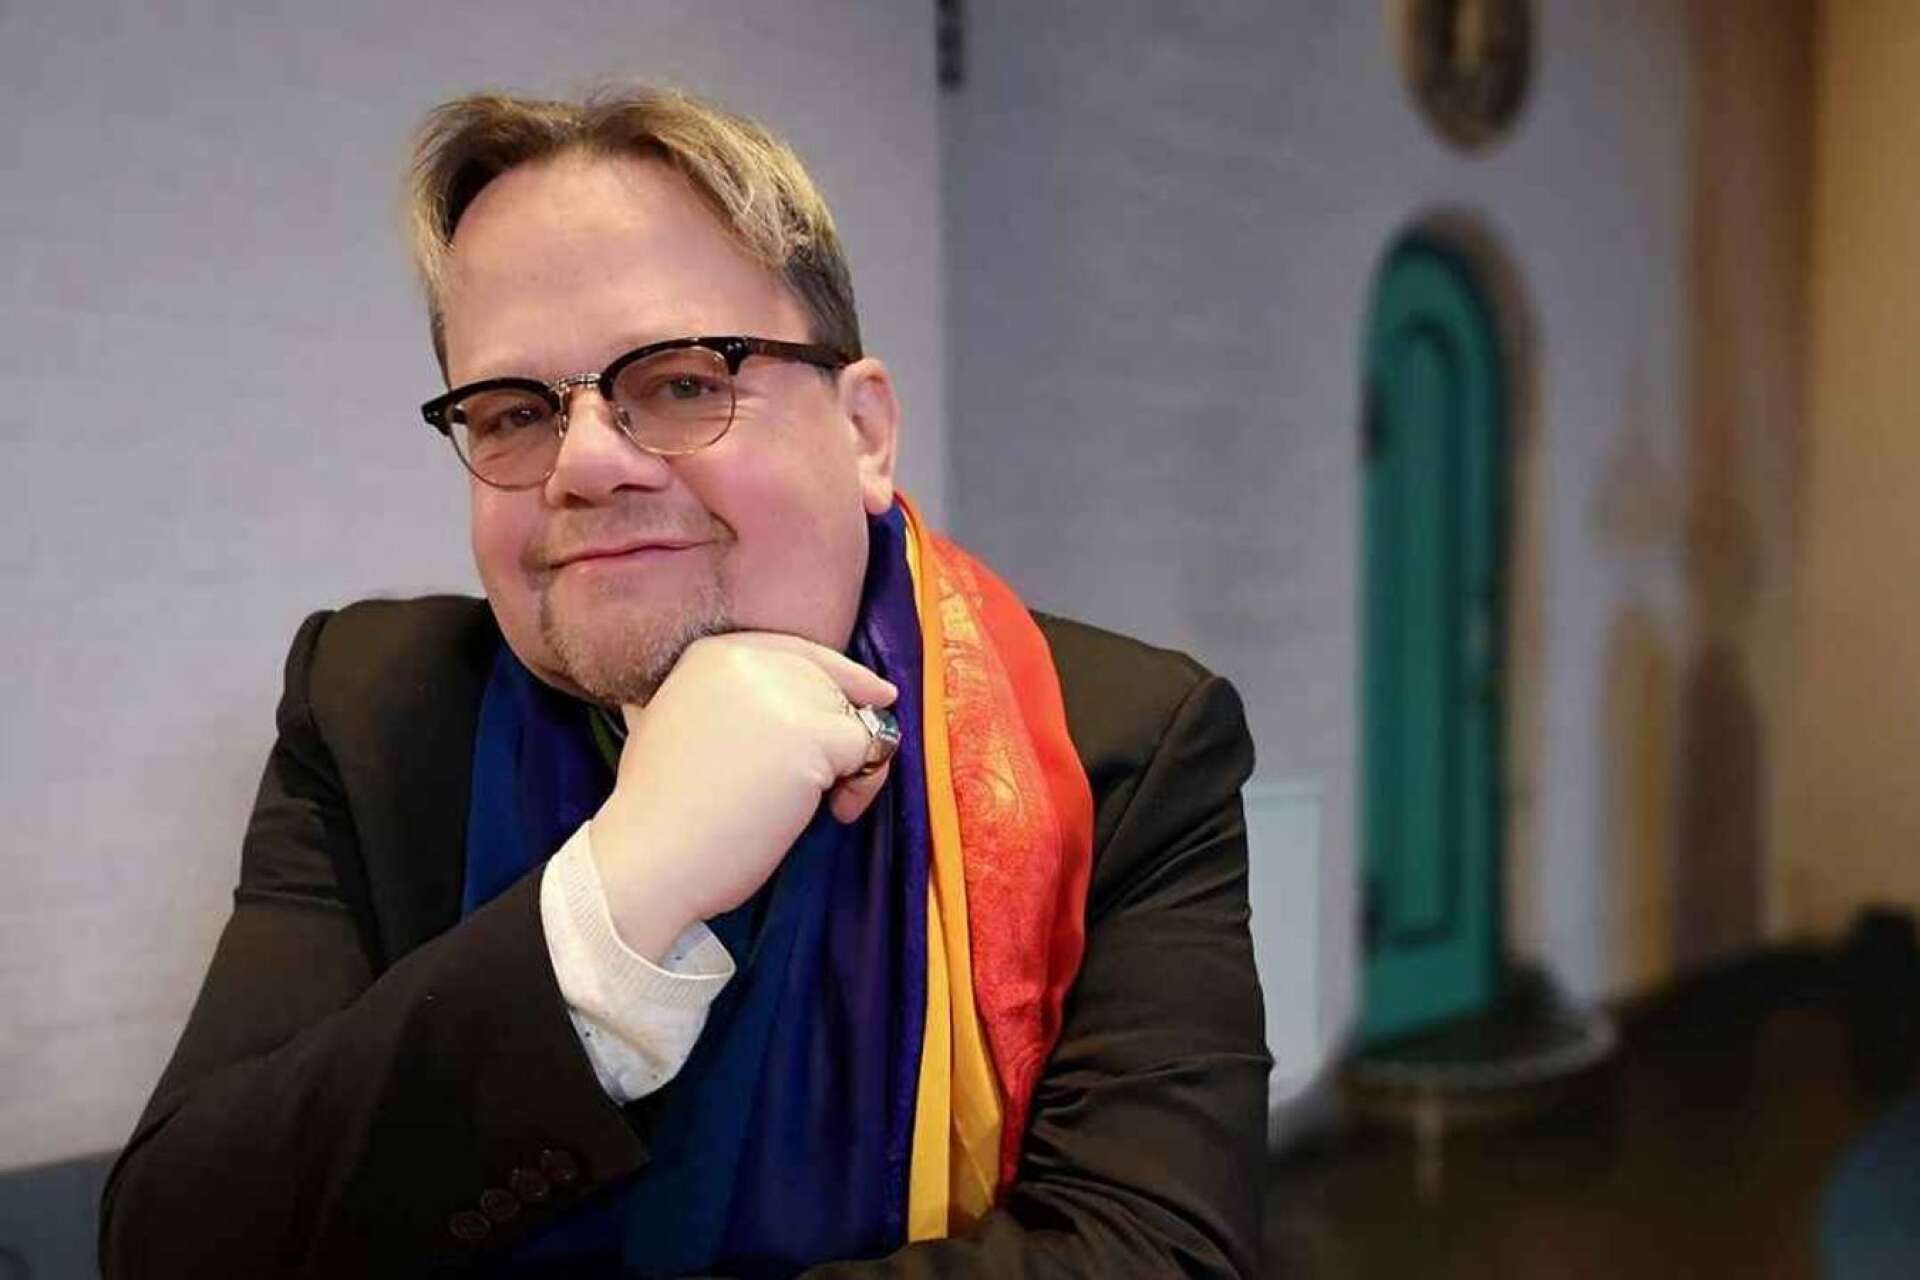 Prästen Lars Gårdfeldt från Kristinehamn vill vända på debatten.